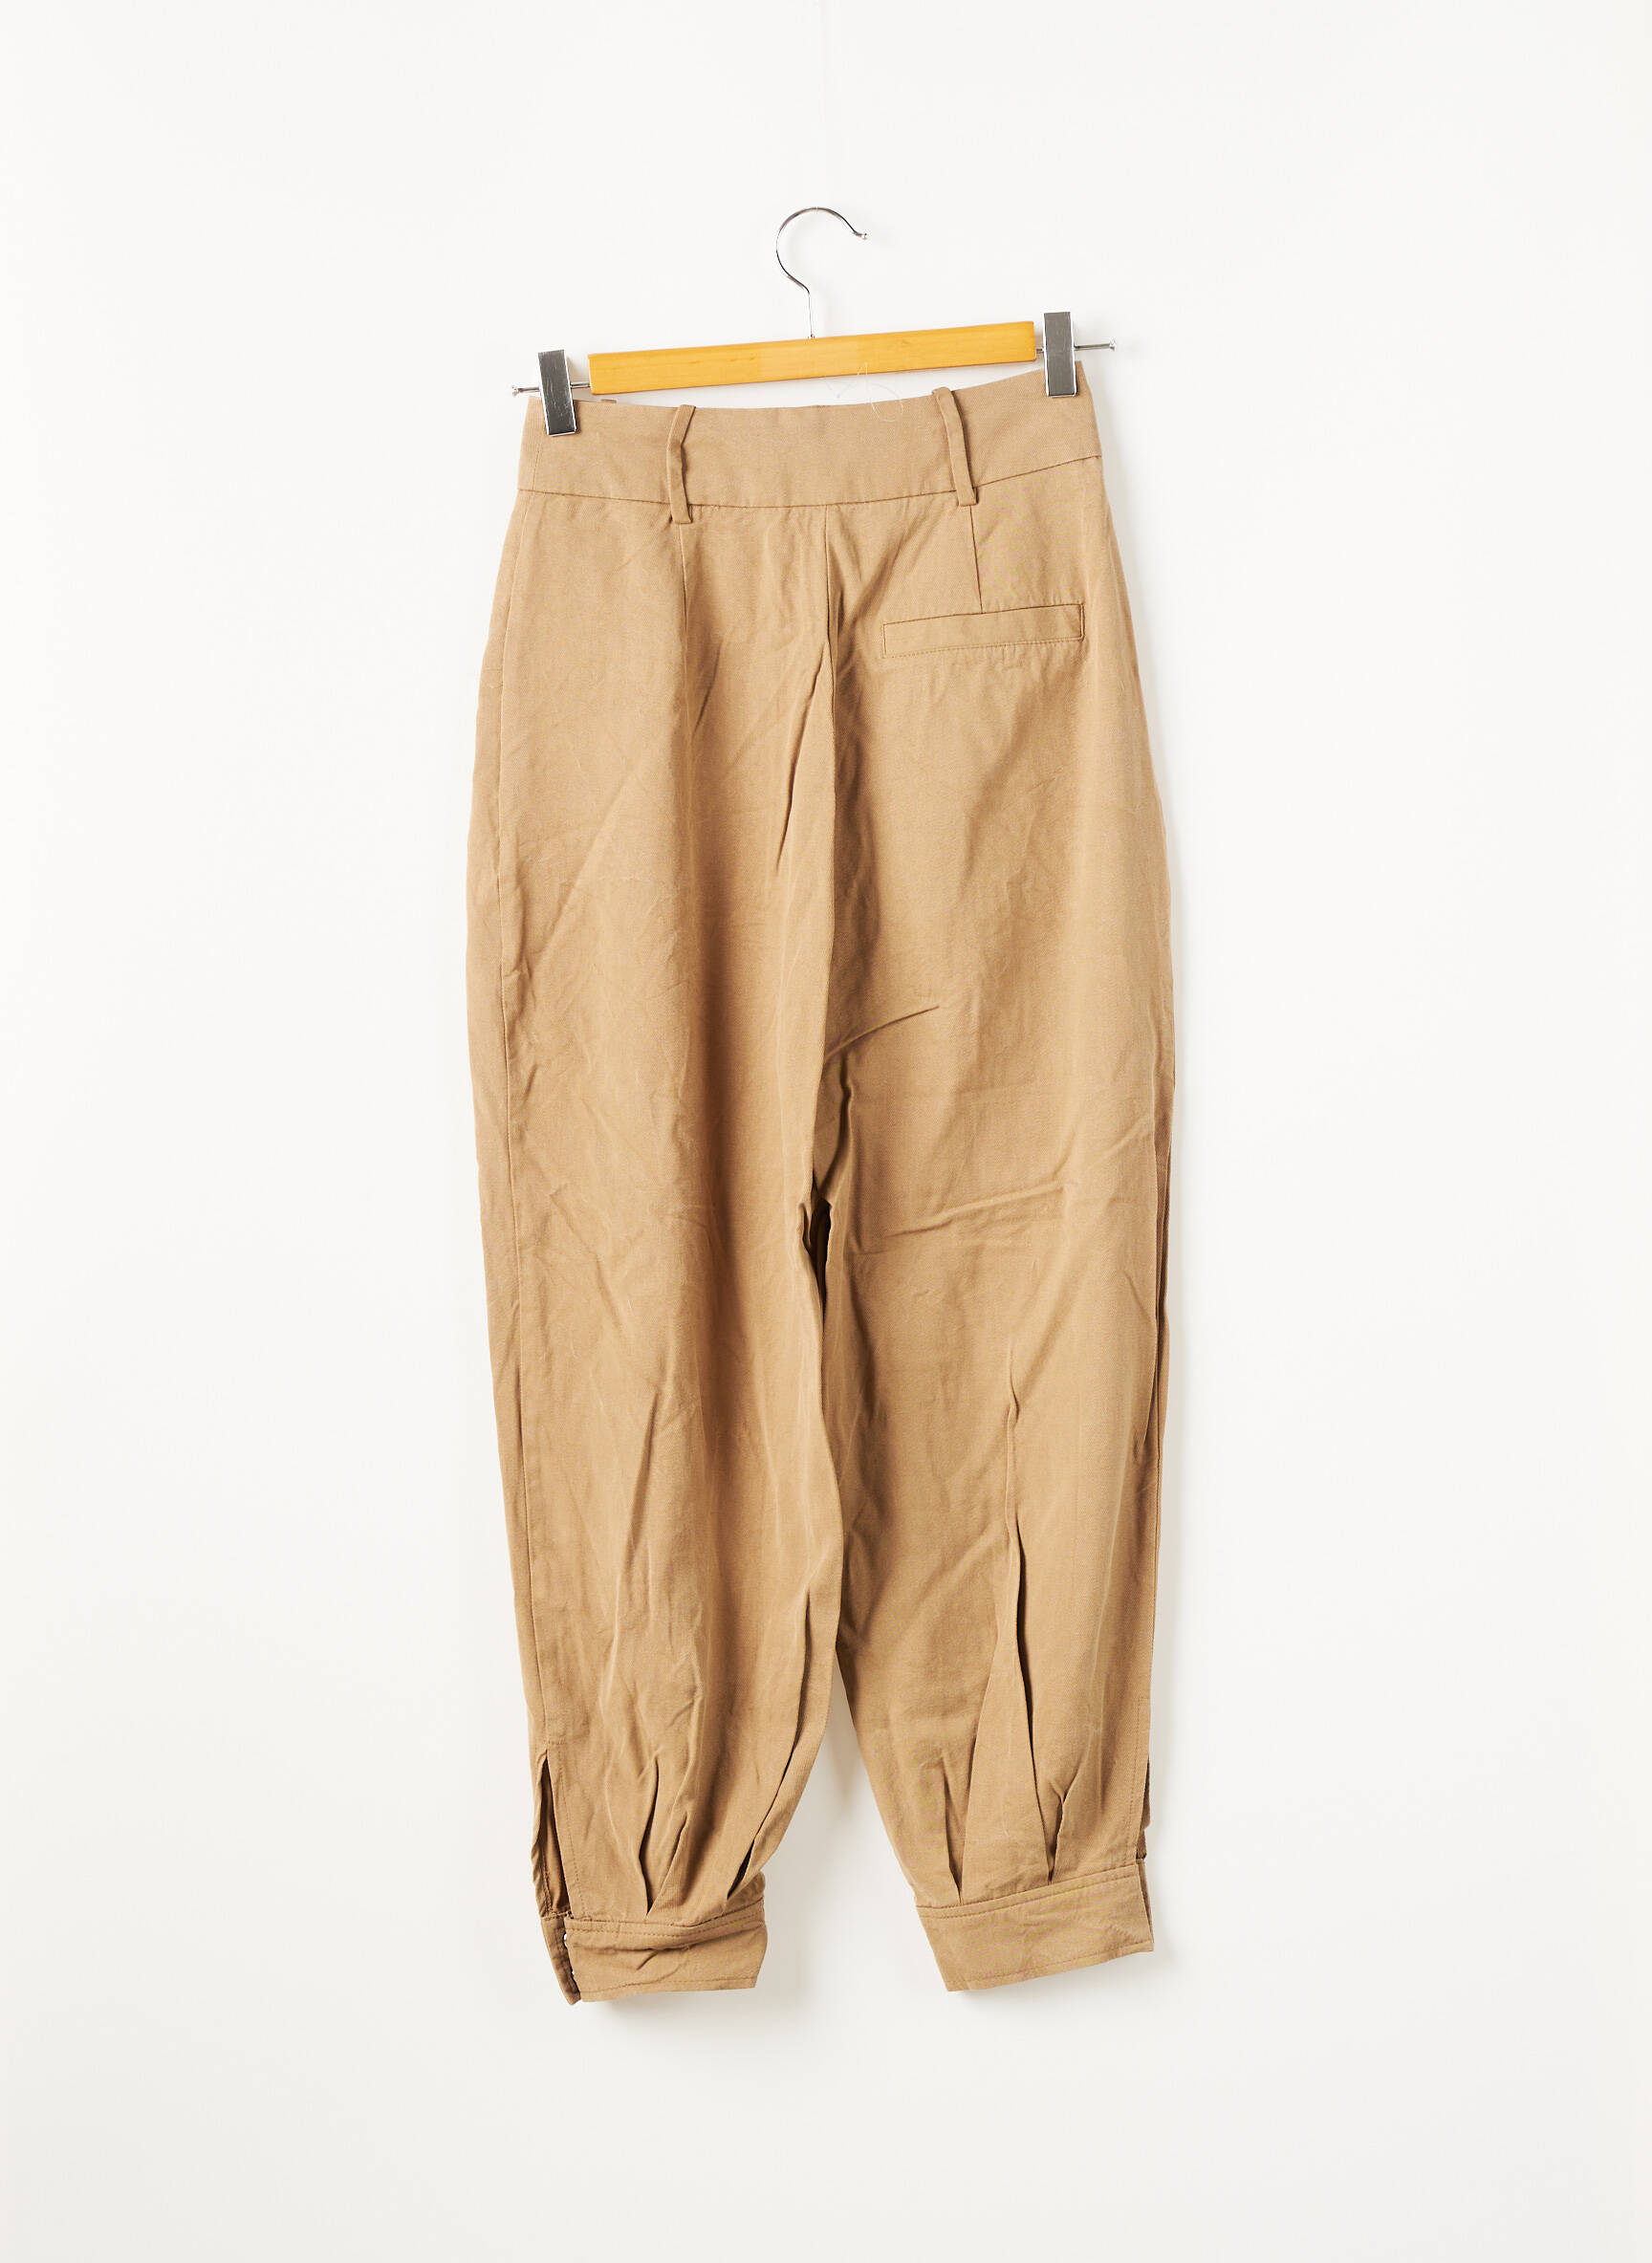 ZARA Pantalon 7/8 de couleur beige en soldes pas cher 1880338-beige0 - Modz